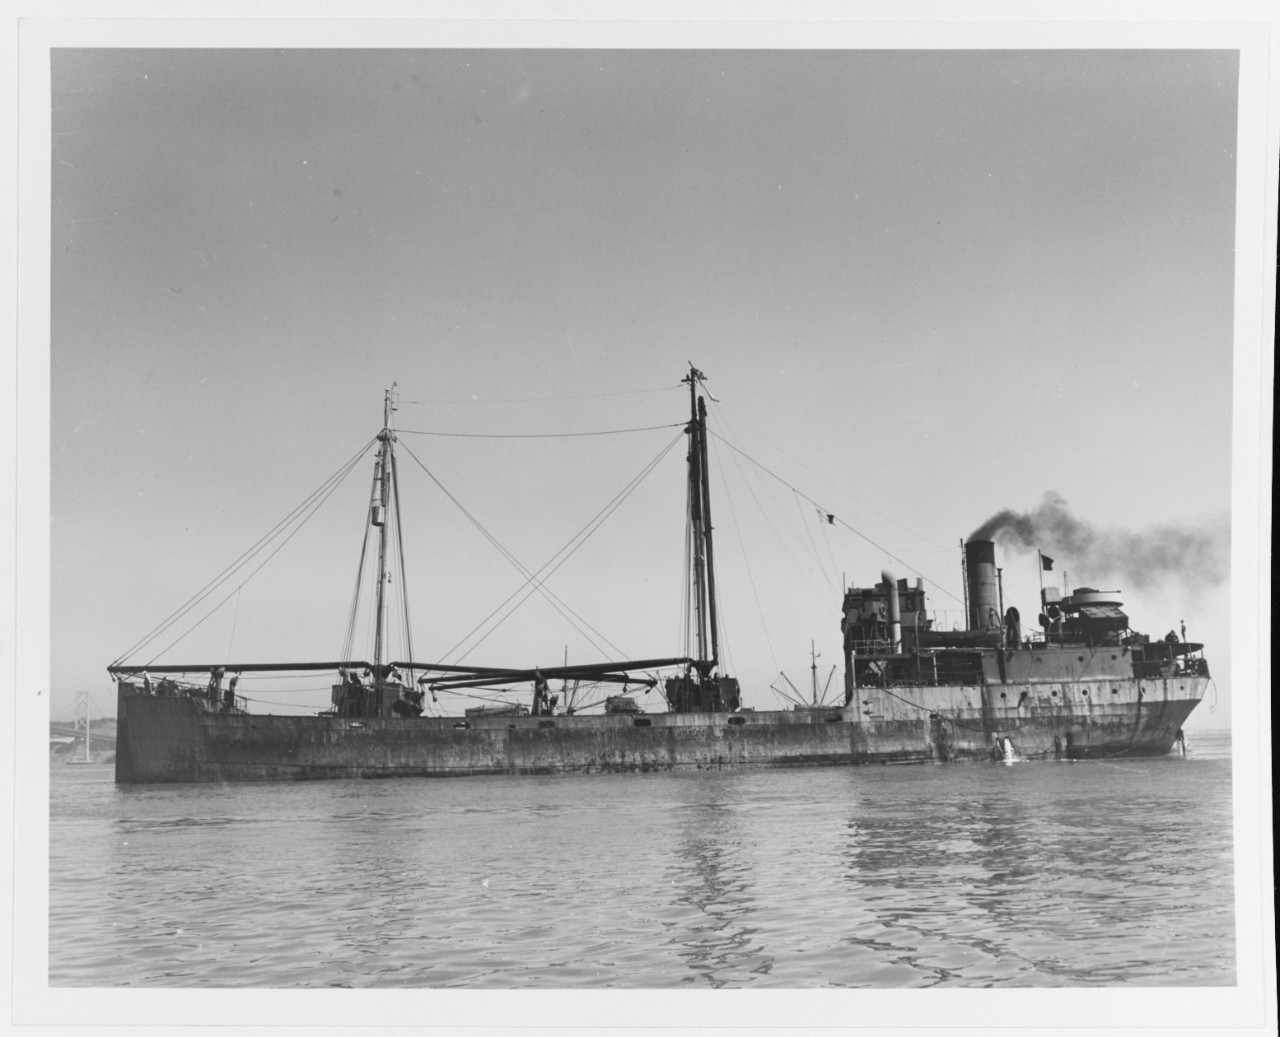 S.S. GRIFFCO (British Merchant Freighter, 1919-1951)